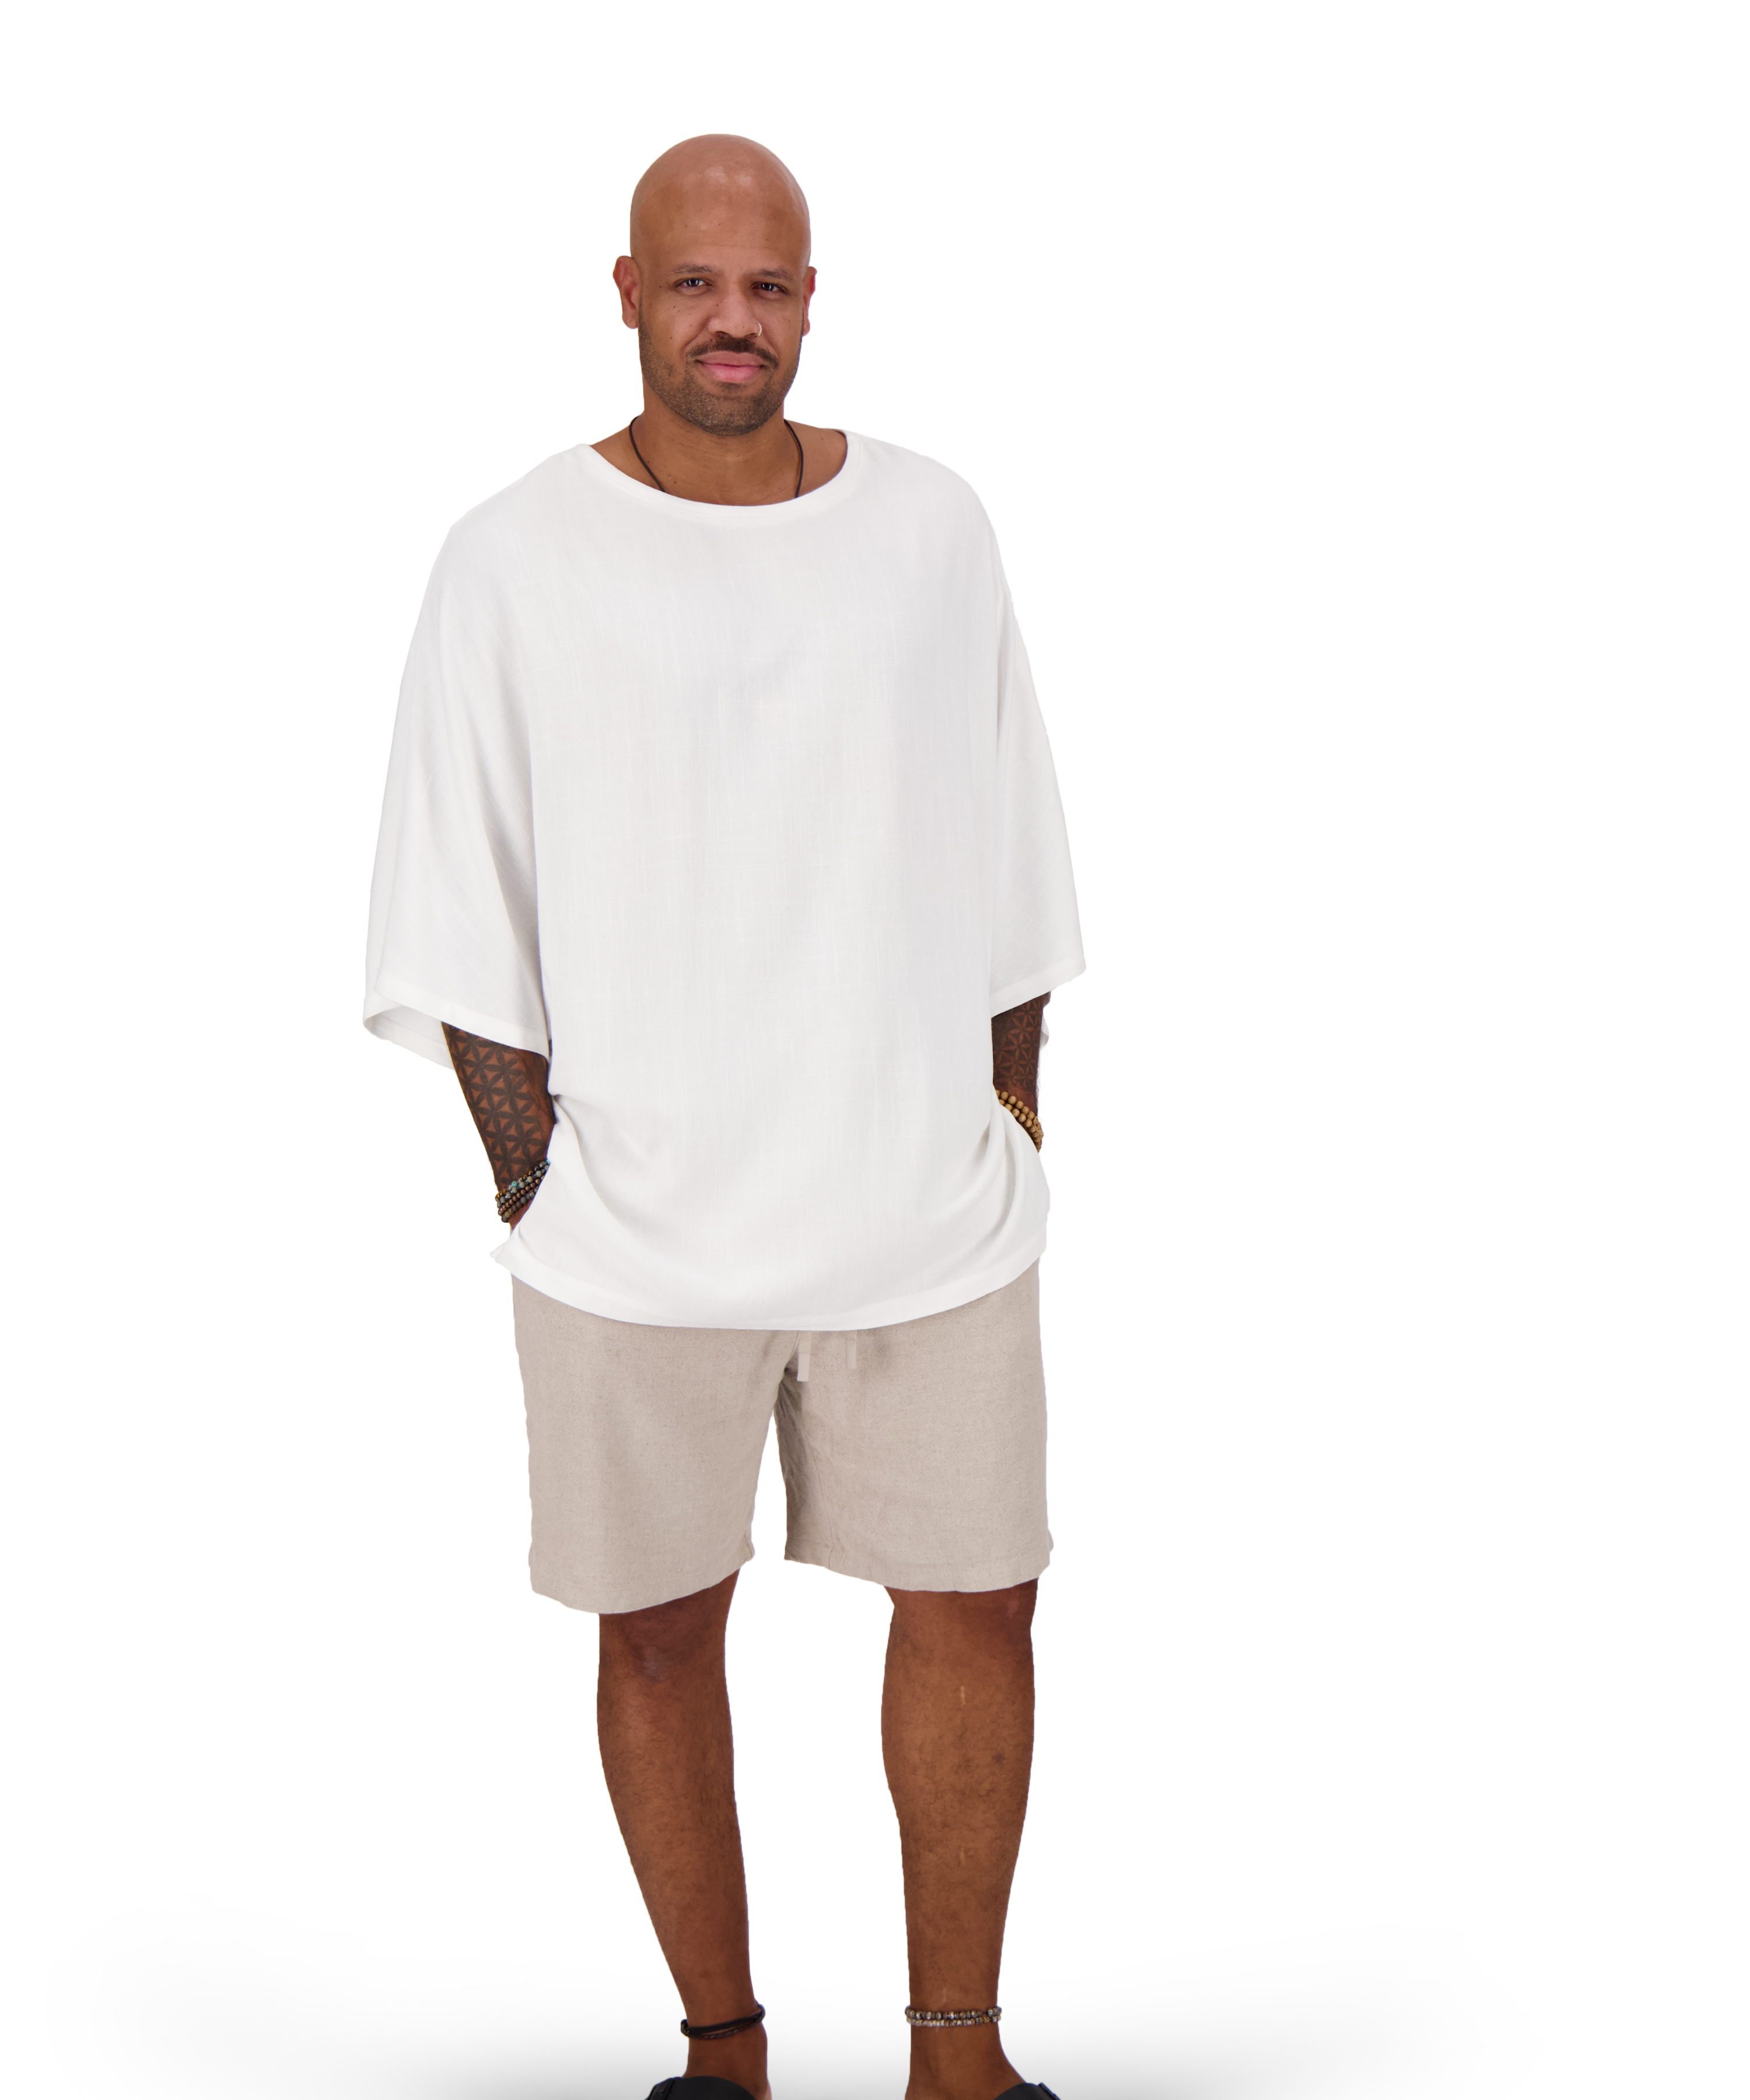 Model trägt weißes Oversize Leinen T-Shirt von Nomadik, designed in Zurich. Luftig-leichter Stoff für Komfort und Bewegungsfreiheit an warmen Tagen.